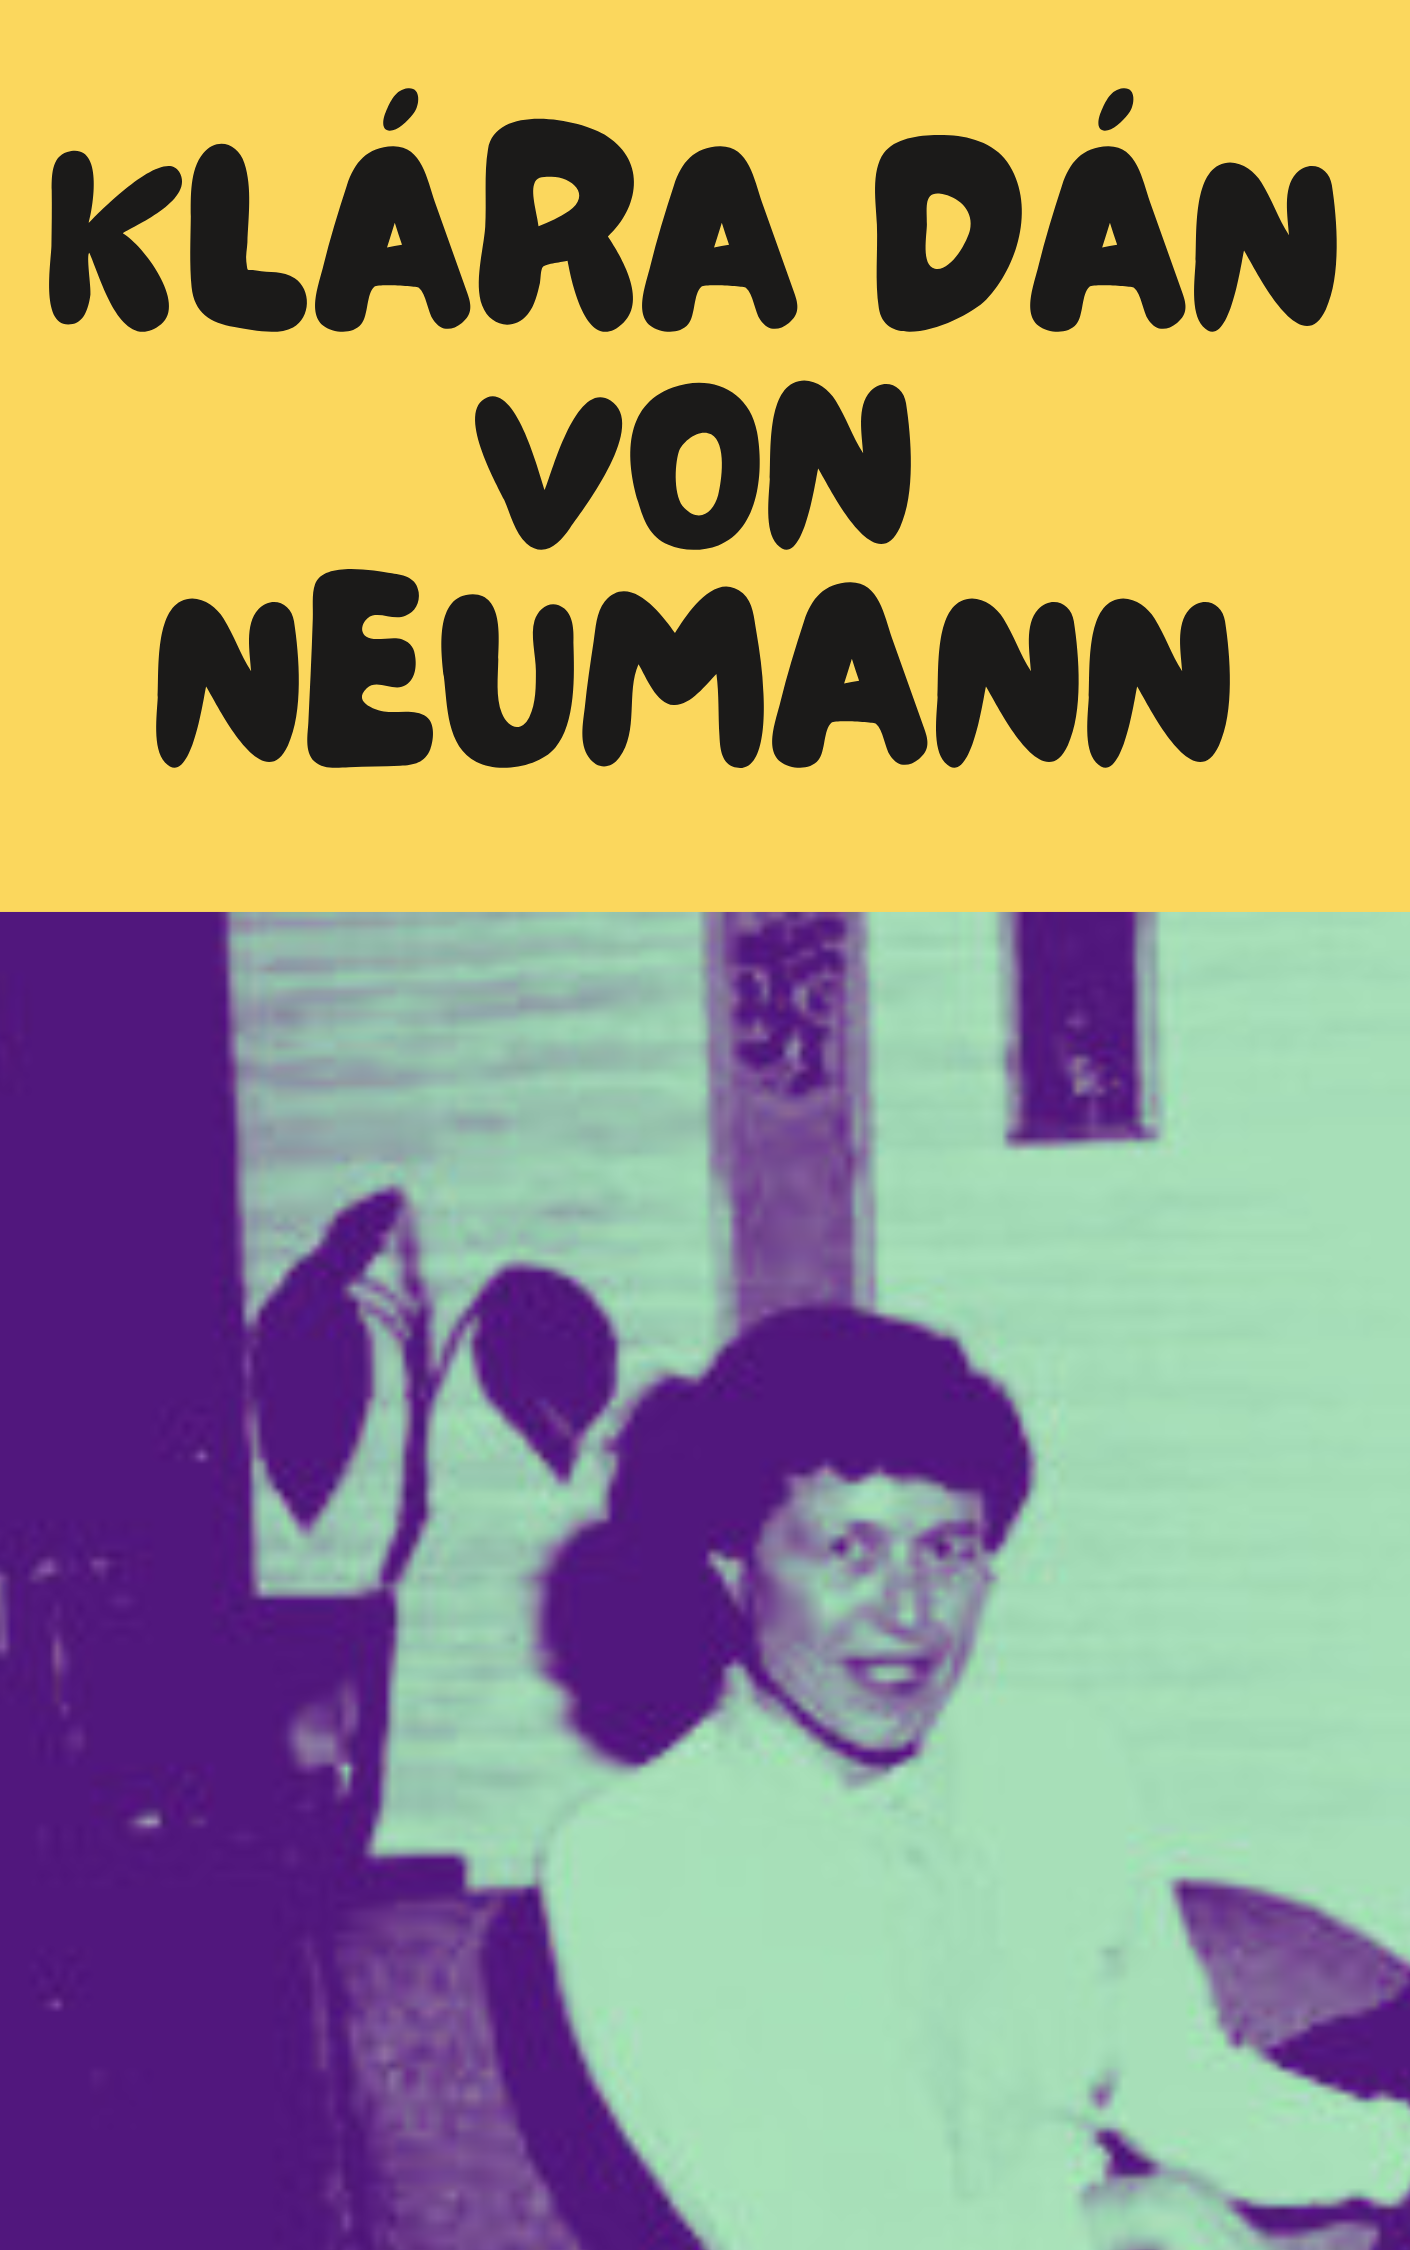 https://mujeresconciencia.com/2021/01/06/klara-dan-von-neumann-desconocida-pionera-de-la-programacion/